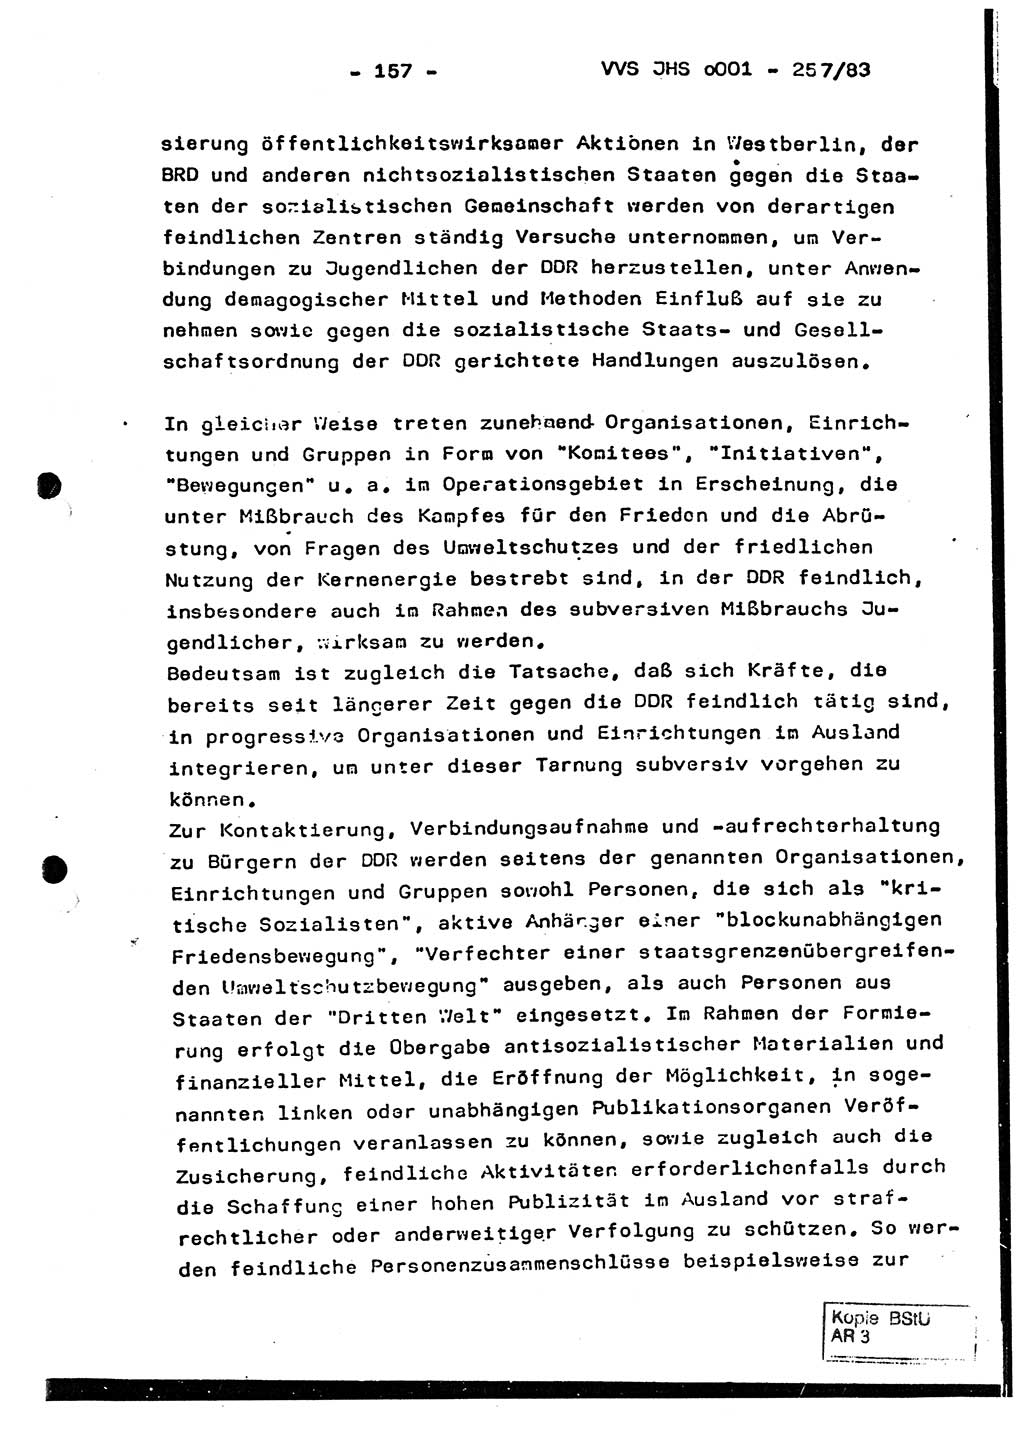 Dissertation, Oberst Helmut Lubas (BV Mdg.), Oberstleutnant Manfred Eschberger (HA IX), Oberleutnant Hans-Jürgen Ludwig (JHS), Ministerium für Staatssicherheit (MfS) [Deutsche Demokratische Republik (DDR)], Juristische Hochschule (JHS), Vertrauliche Verschlußsache (VVS) o001-257/83, Potsdam 1983, Seite 157 (Diss. MfS DDR JHS VVS o001-257/83 1983, S. 157)